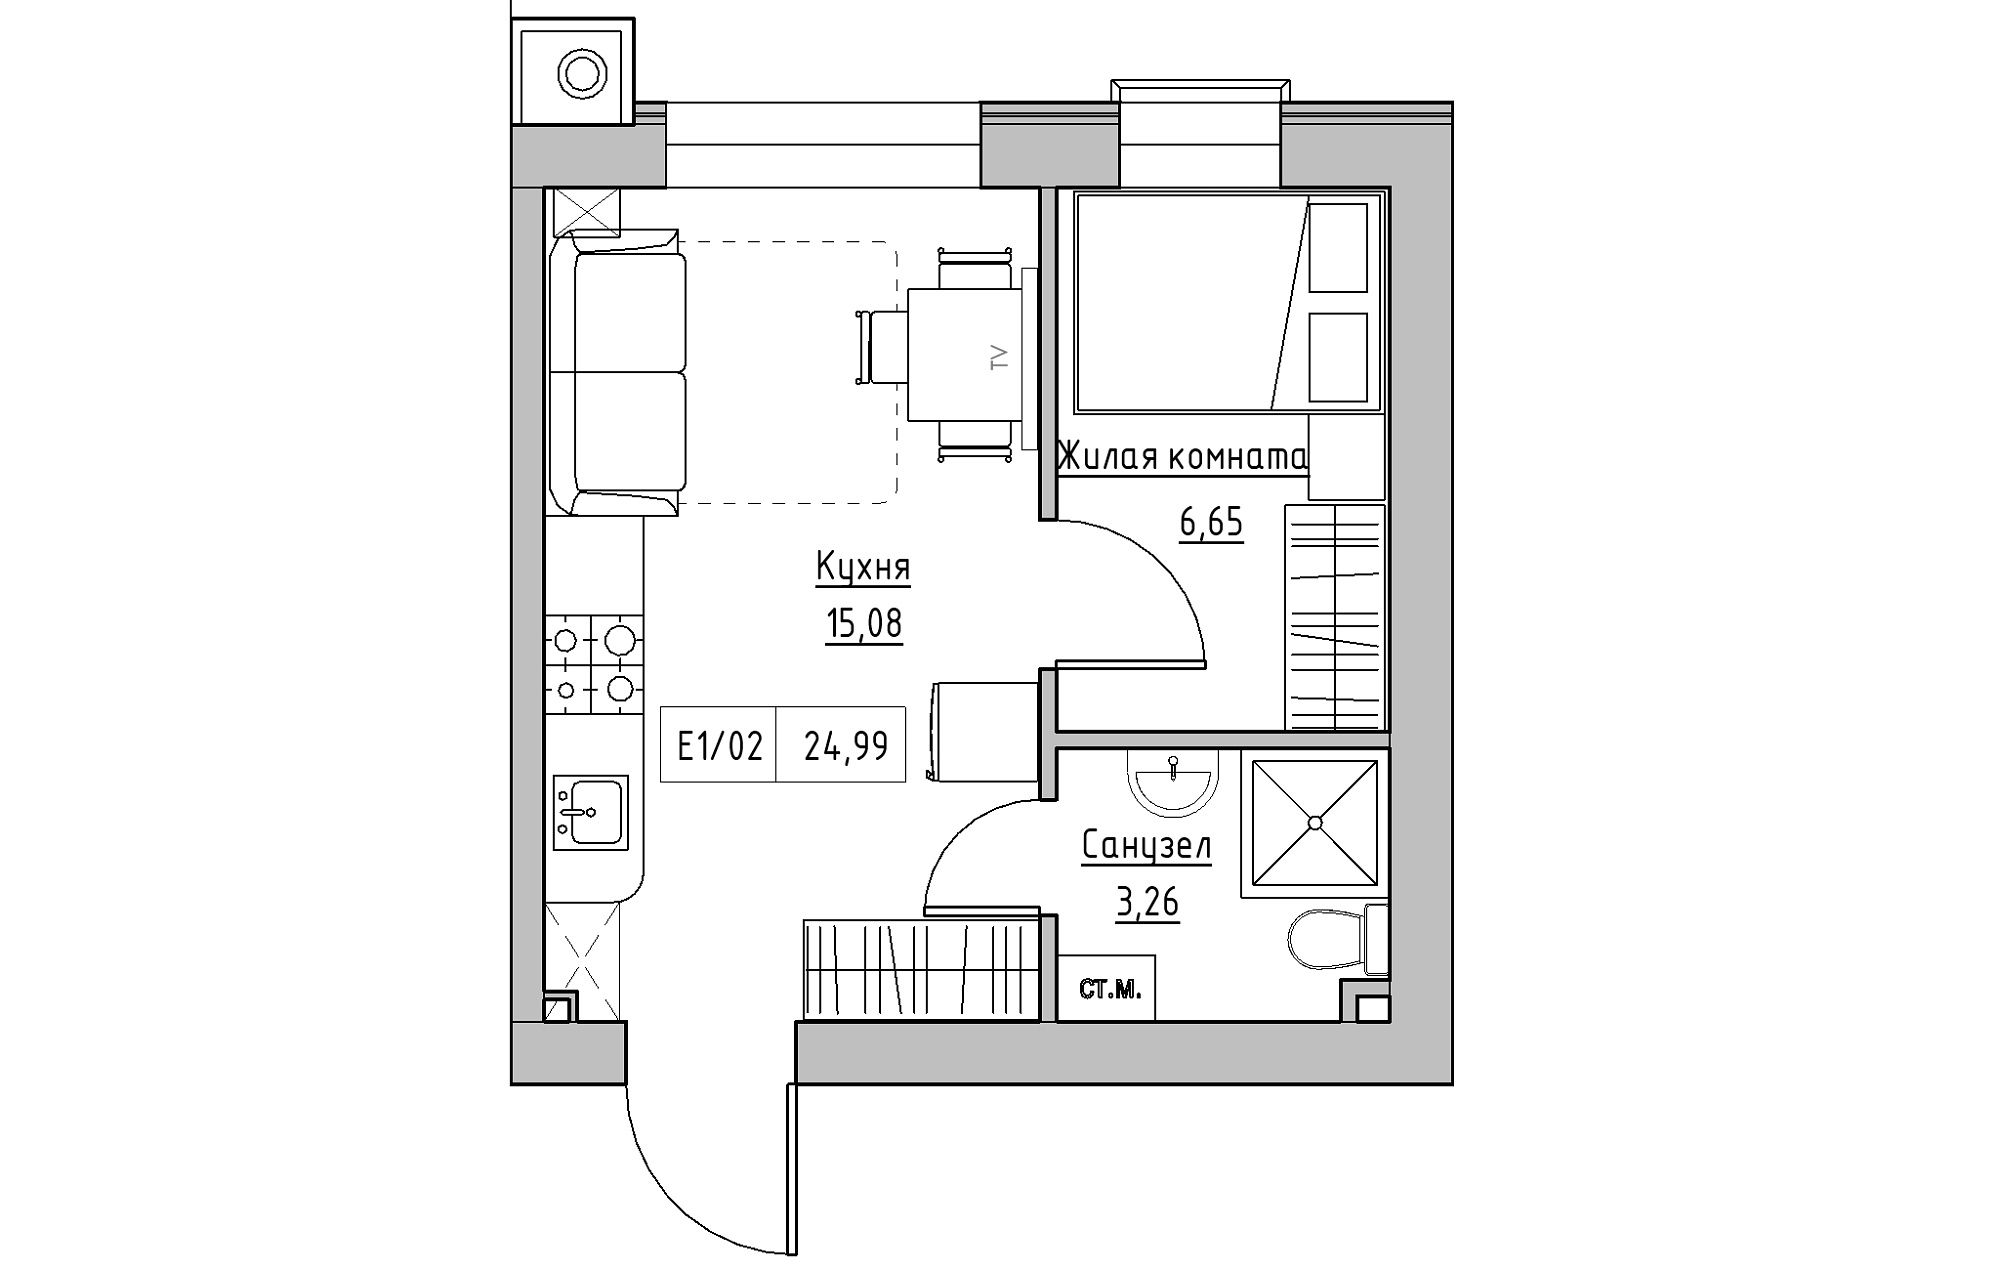 Планировка 1-к квартира площей 24.99м2, KS-013-03/0010.